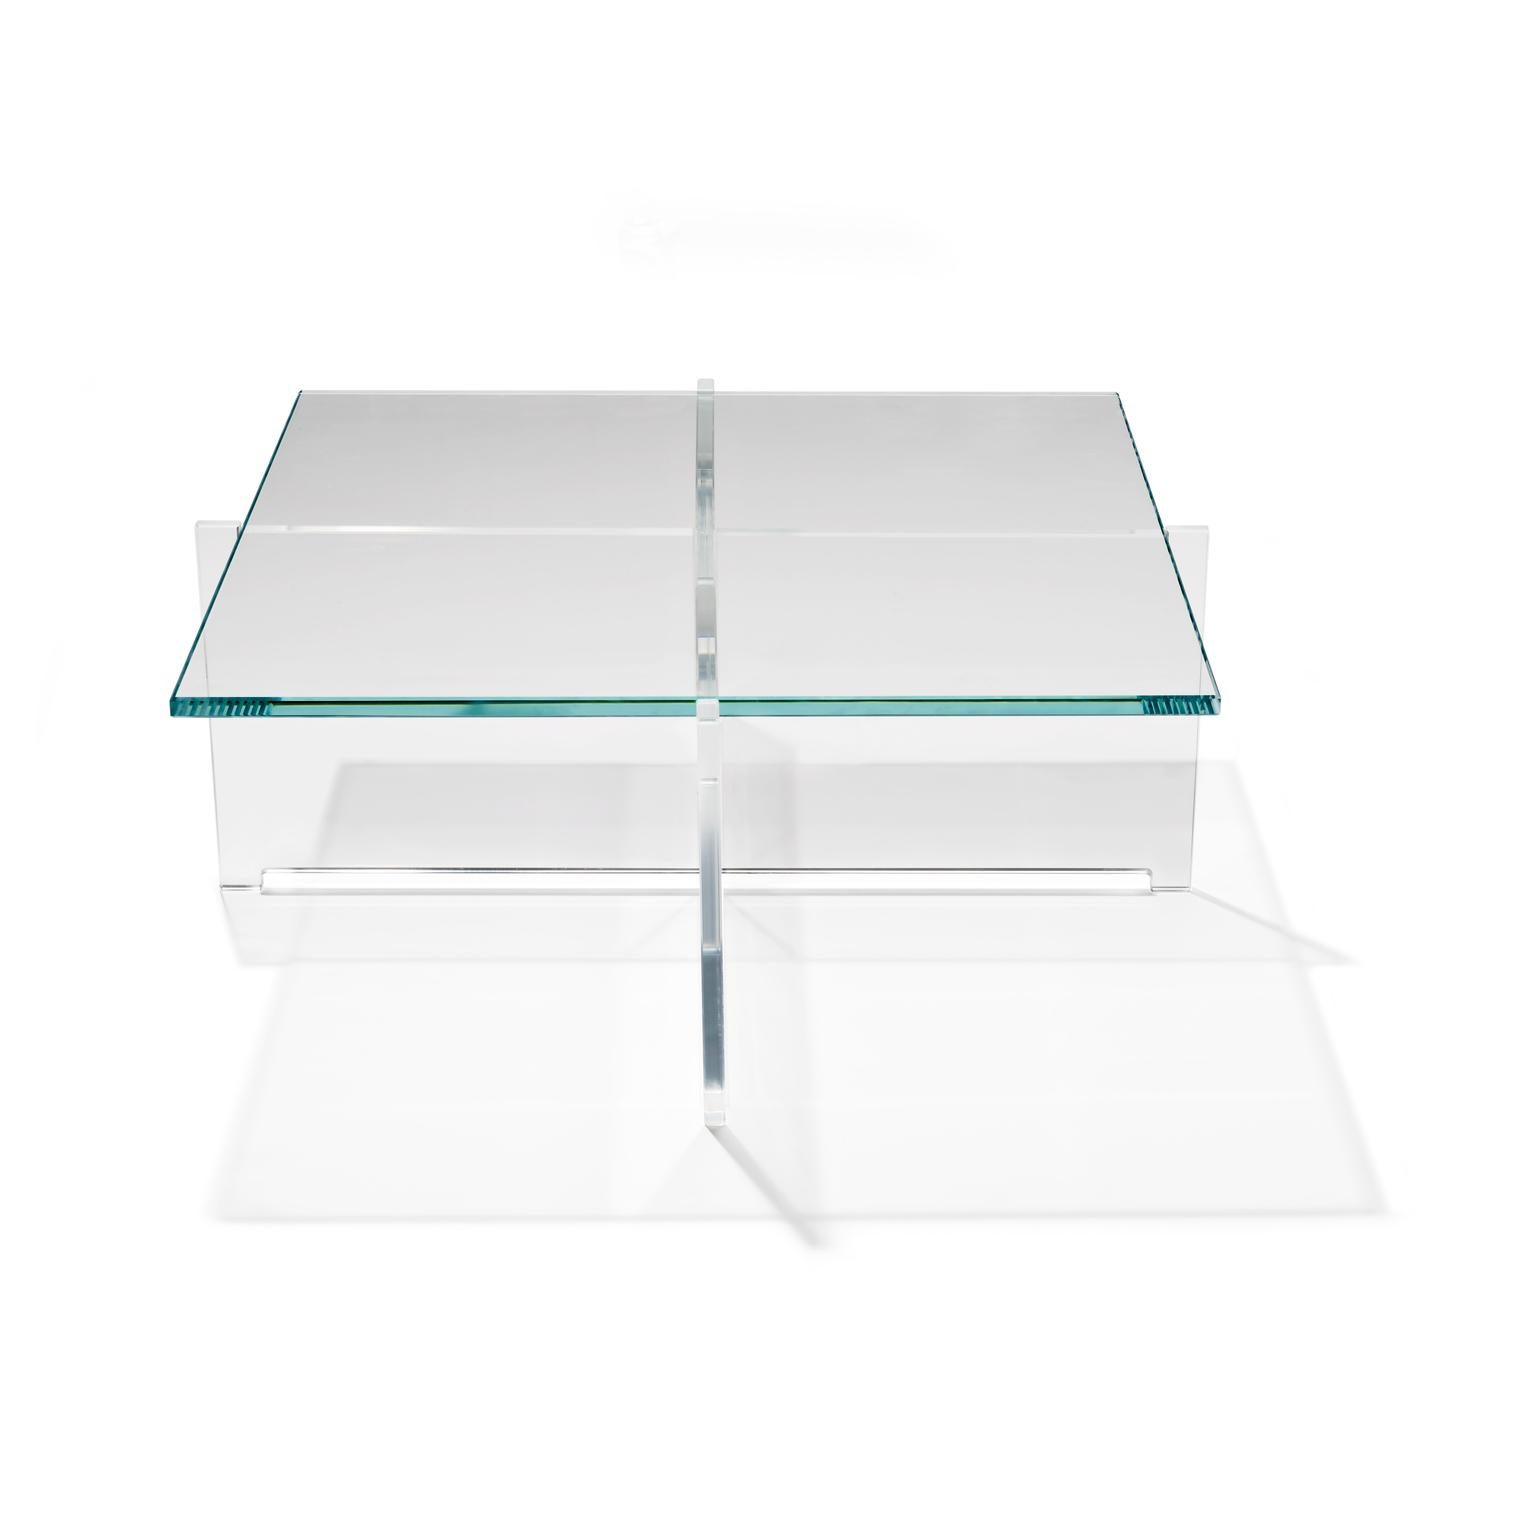 Tisch, entworfen von Bodil Kjær im Jahr 1959. 

Der CrossPlex Low Table wurde als Teil von Kjærs zukunftsweisendem funktionalen Möbelprogramm Elements of Architecture entwickelt, das zwischen 1955 und 1963 entstand. Im Laufe der Jahrzehnte hat